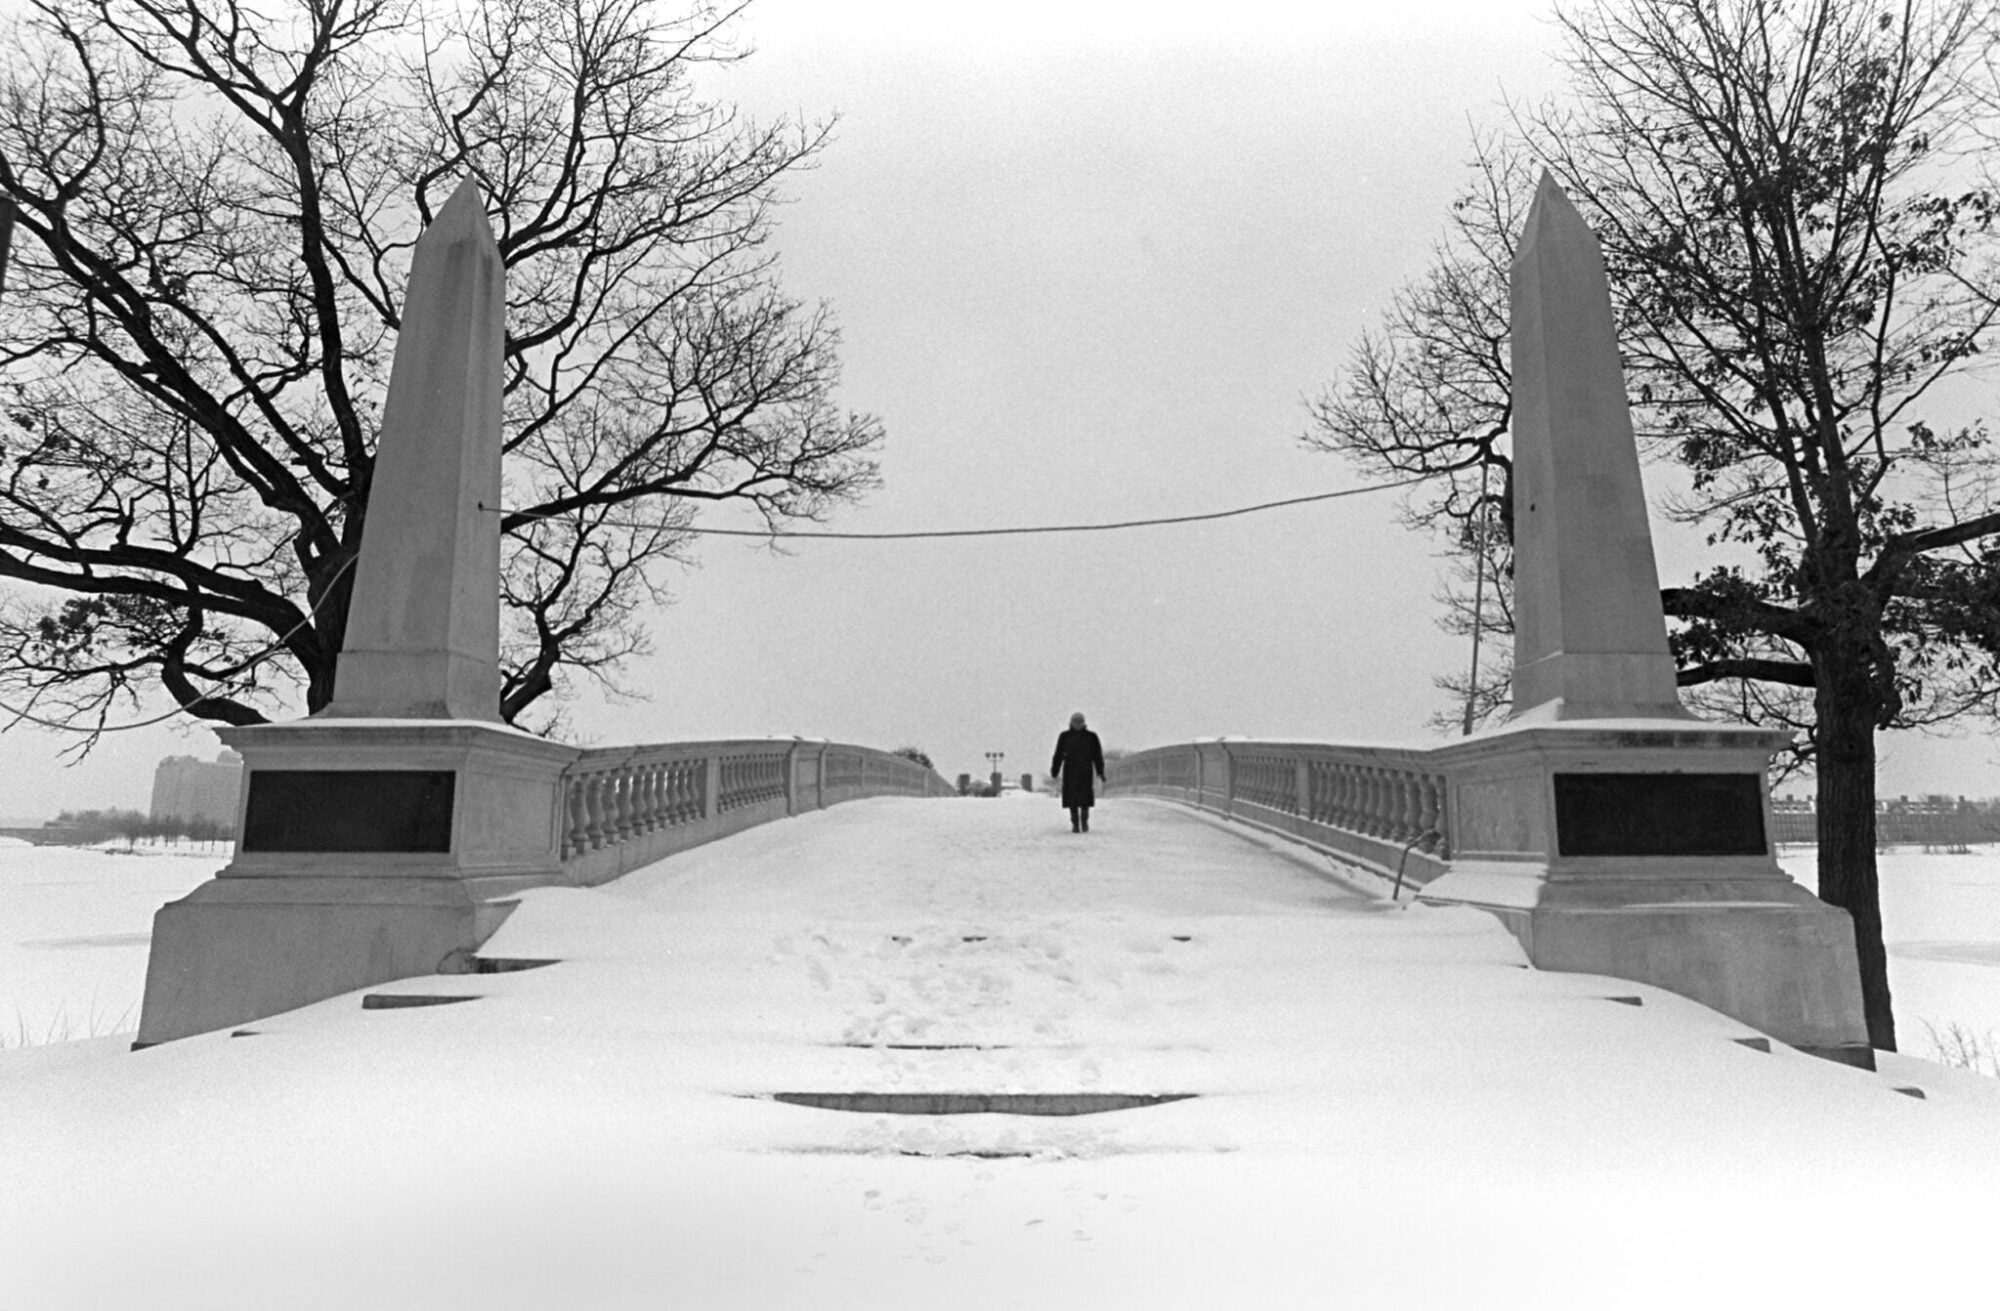 A person walking across a snowy footbridge